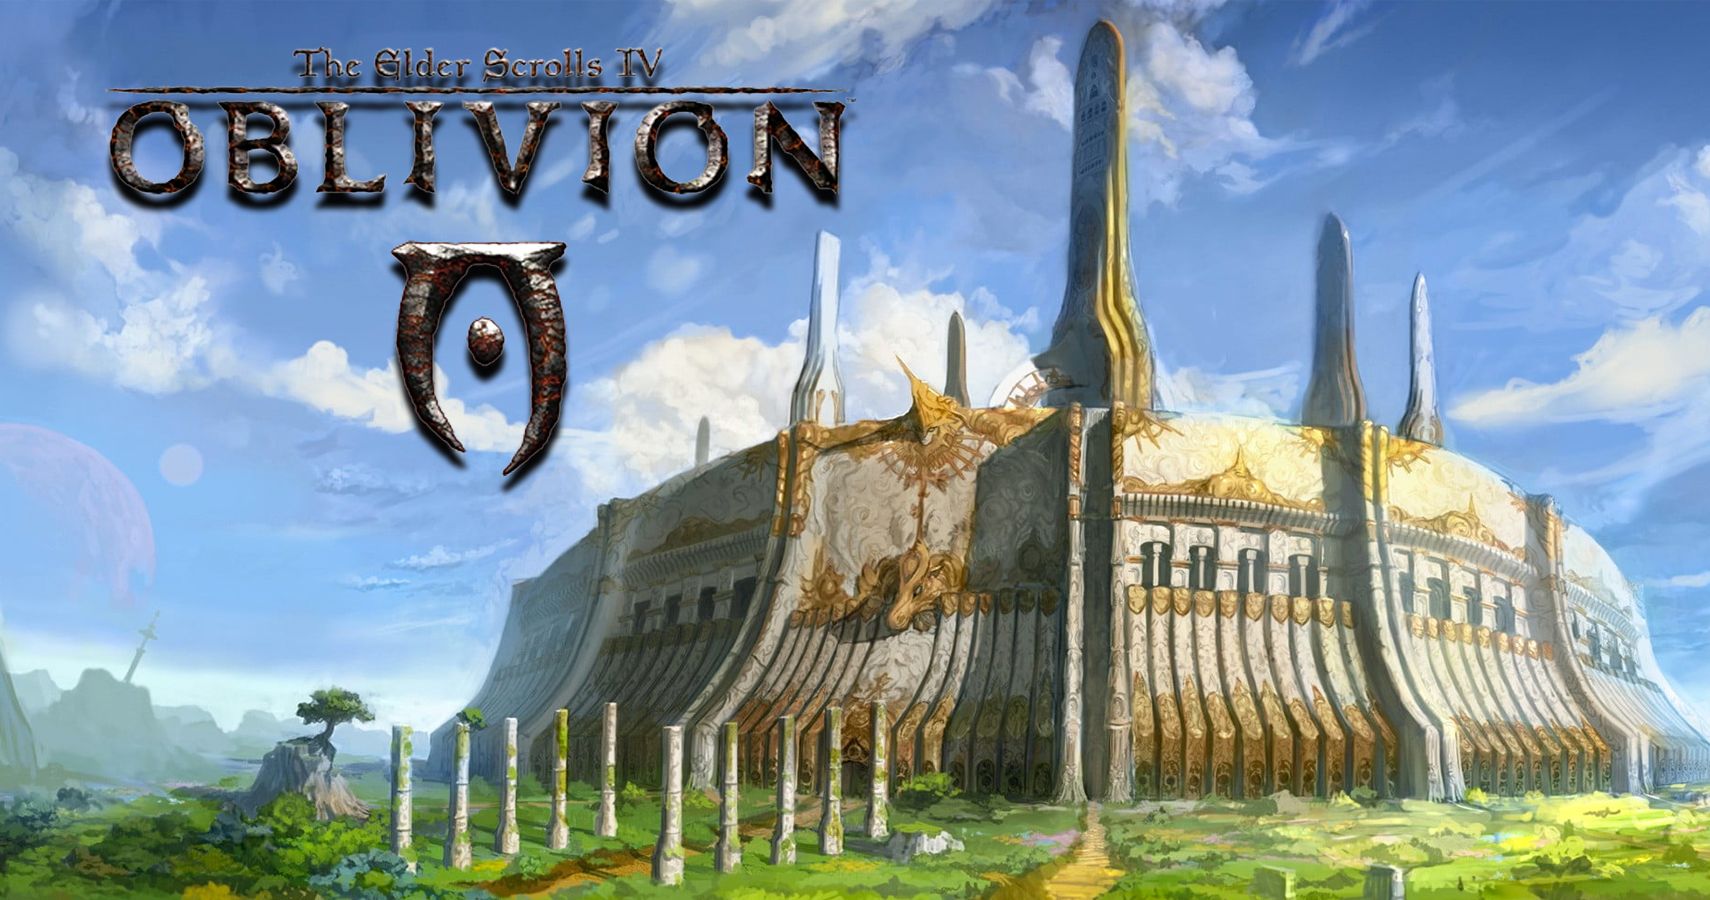 Downloading oblivion on my windows 7 : r/oblivion